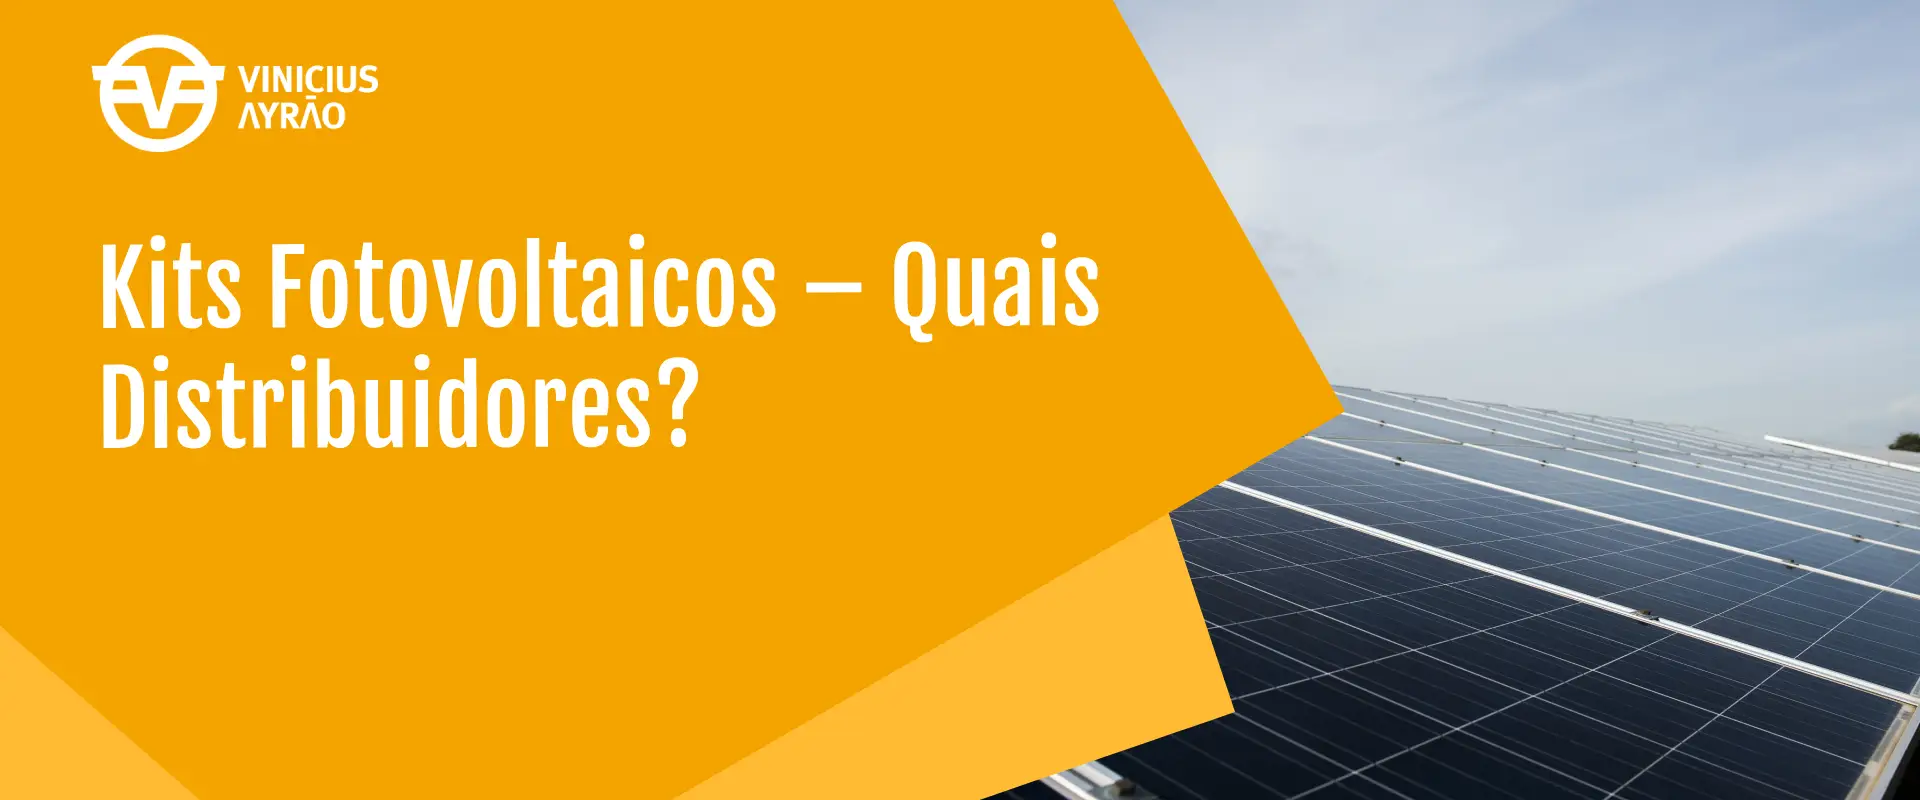 Kits Fotovoltaicos - Quais Distribuidores? - Vinicius Ayrão